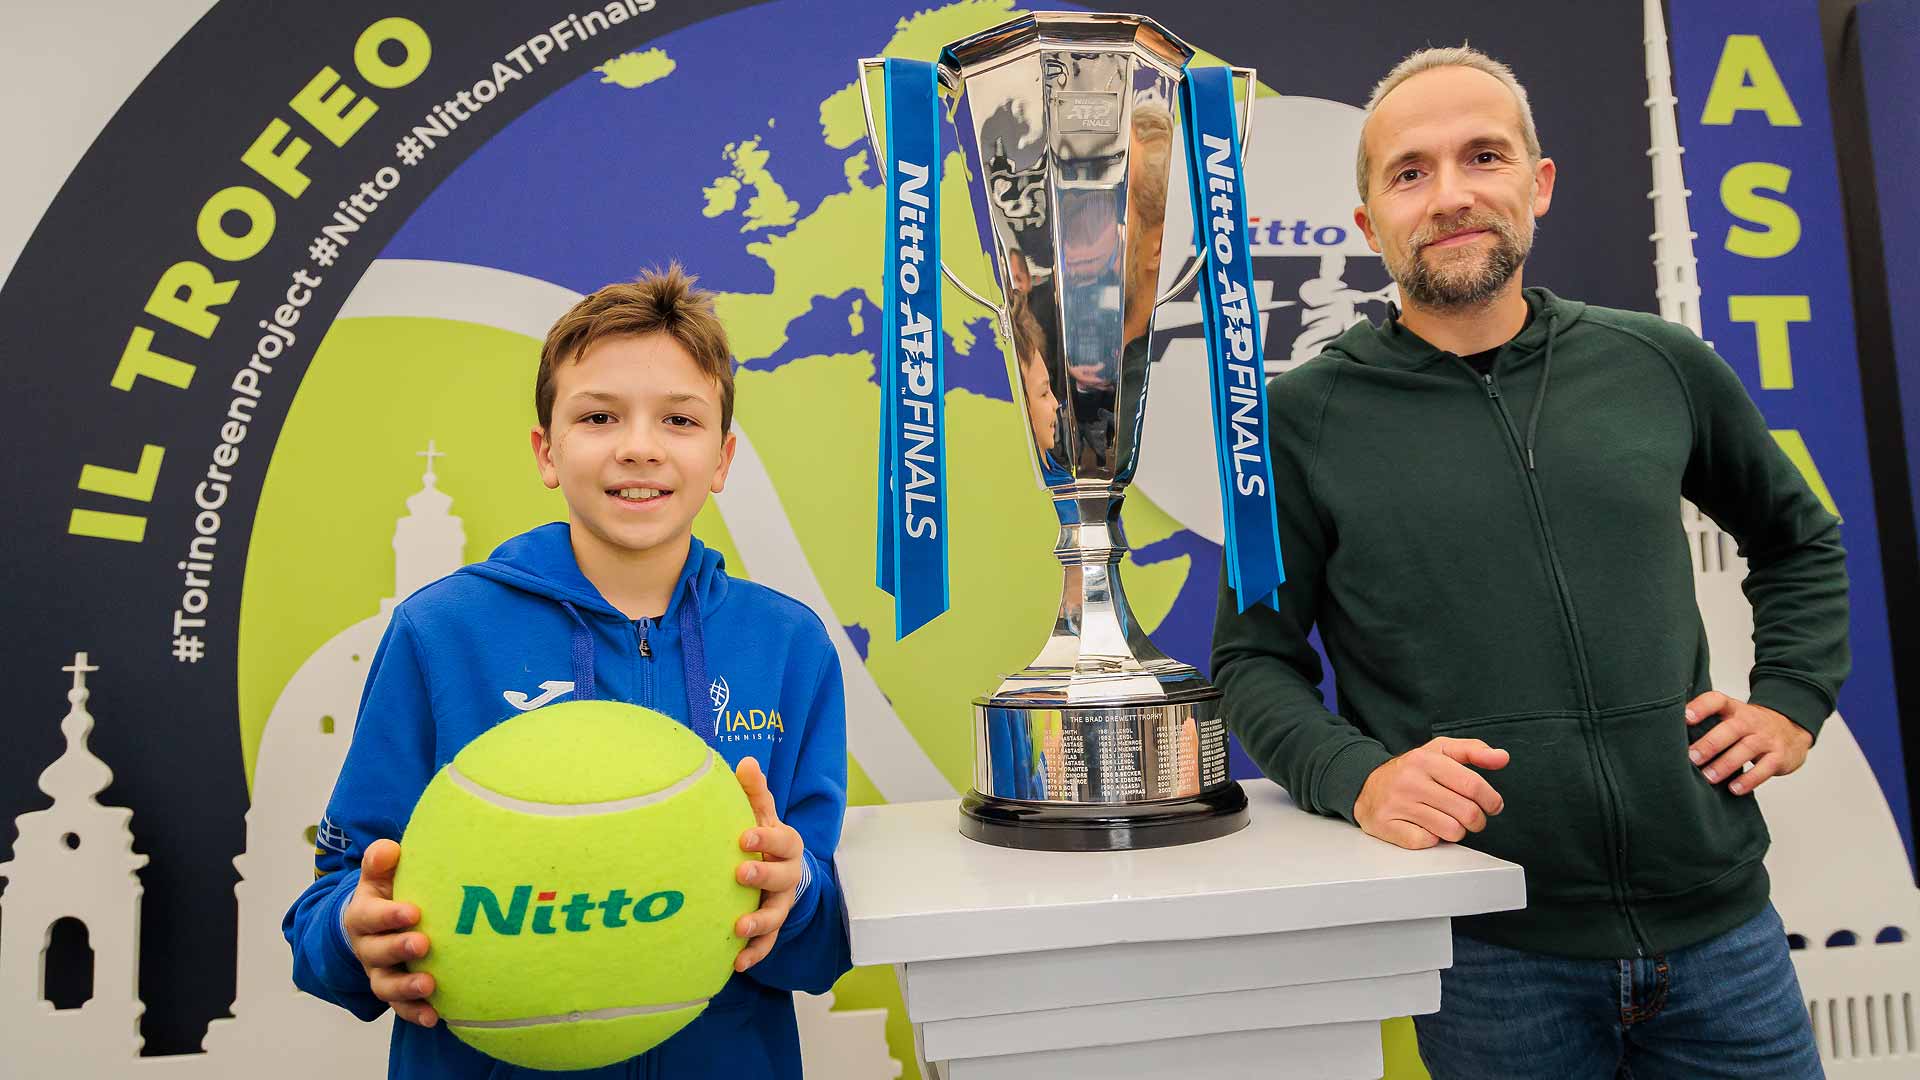 Los aficionados posan con la réplica del trofeo de las Nitto ATP Finals en el Fan Village del Pala Alpitour.